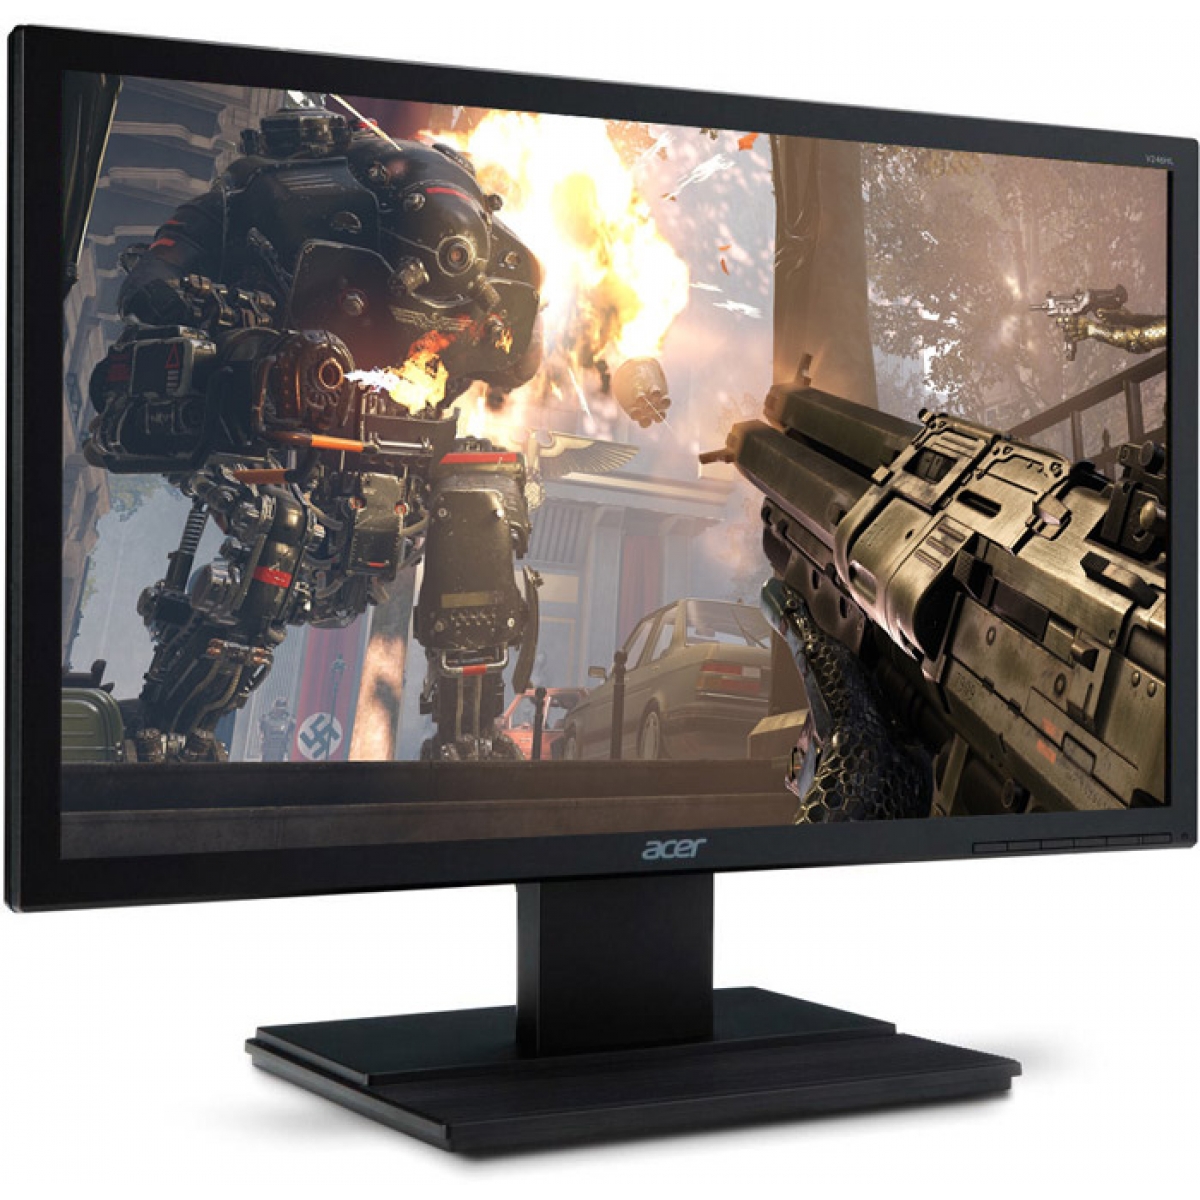 Monitor Gamer Acer 23.6 Pol, Full HD, HDMI-VGA, V246HL